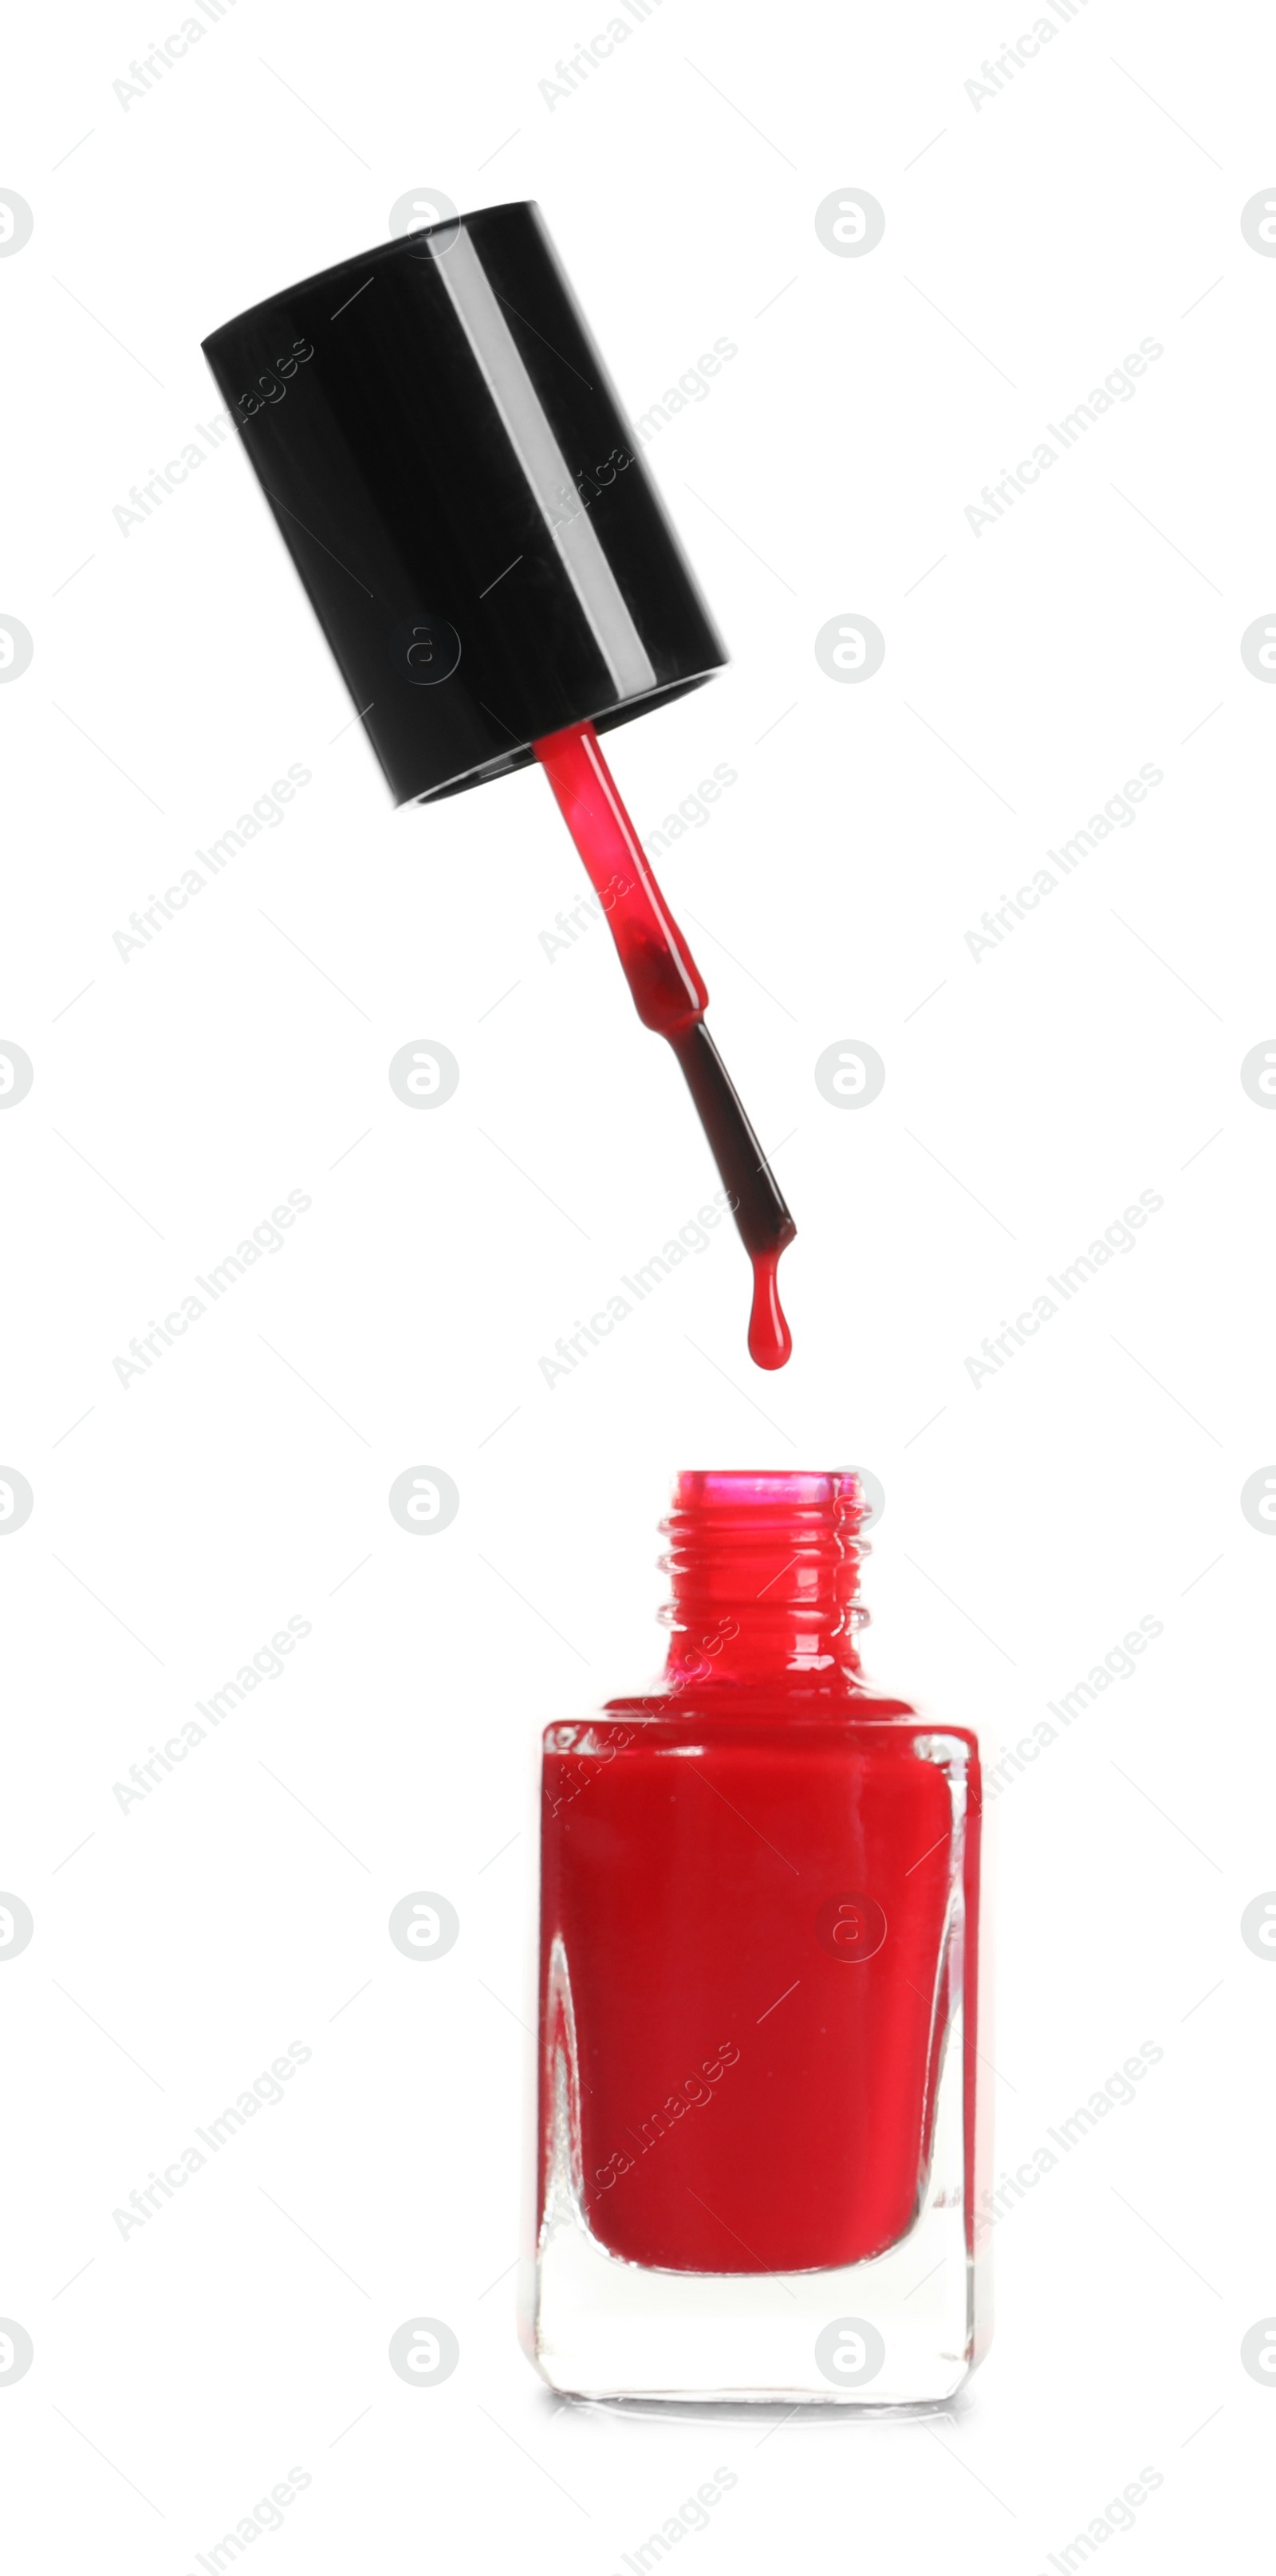 Photo of Brush over nail polish bottle on white background